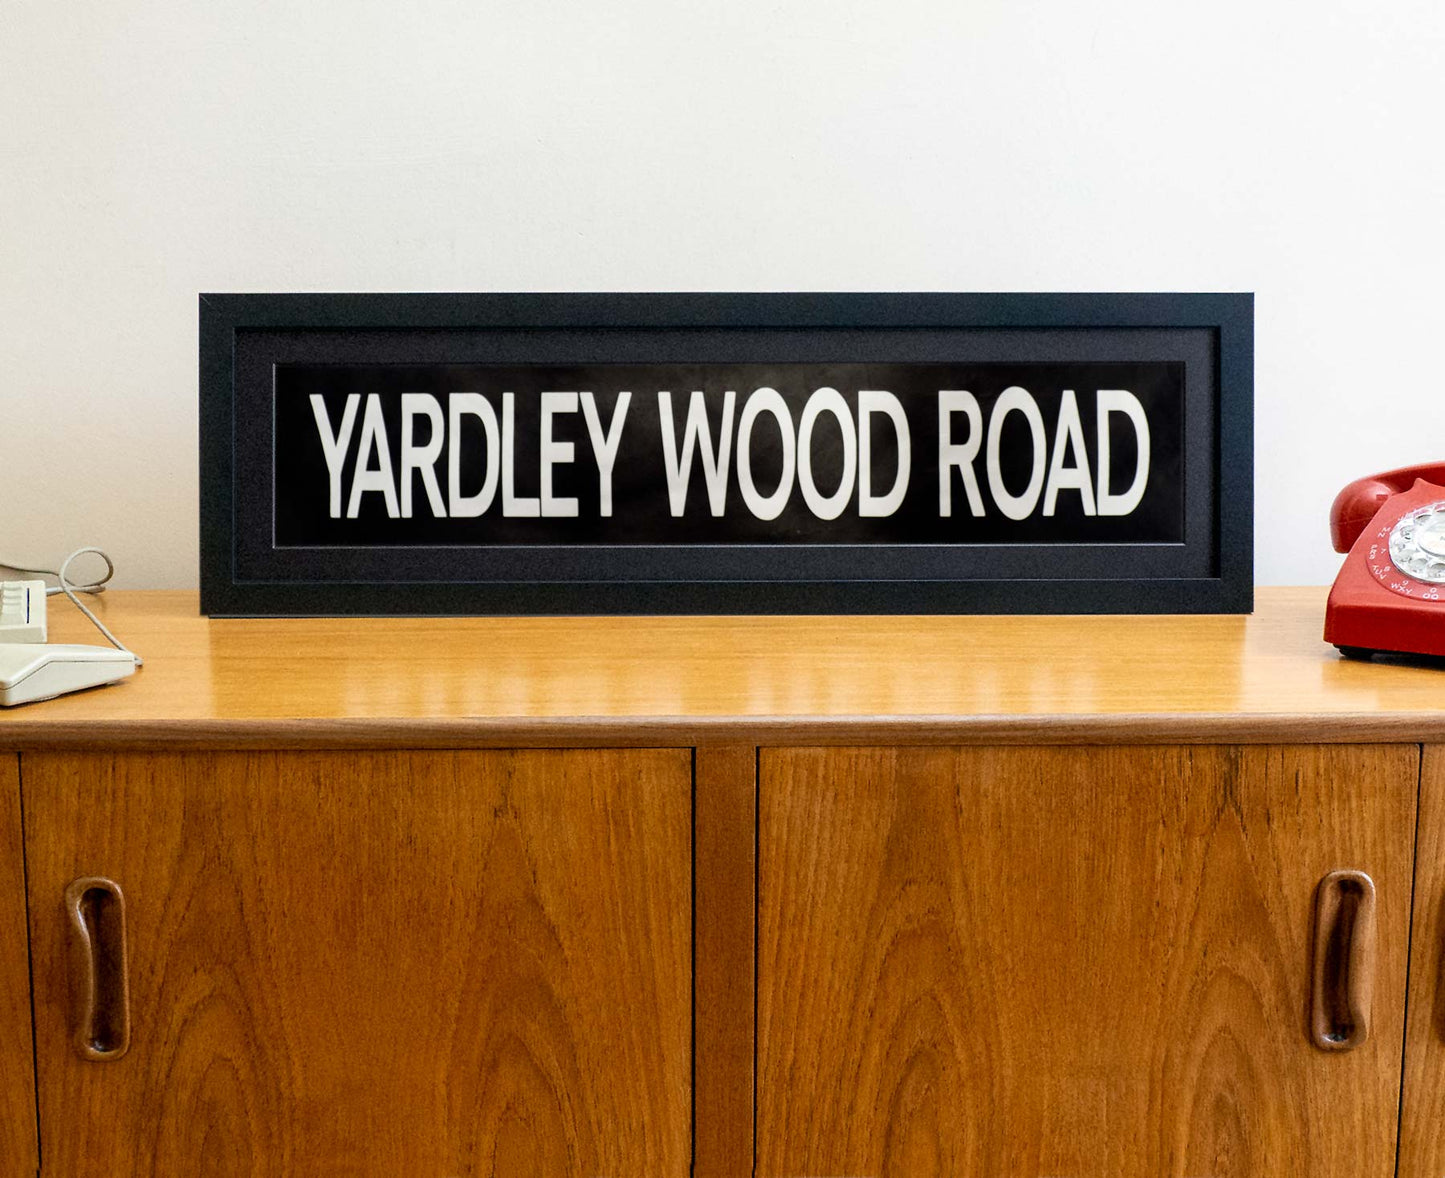 Yardley Wood Road 1990s framed original bus blind